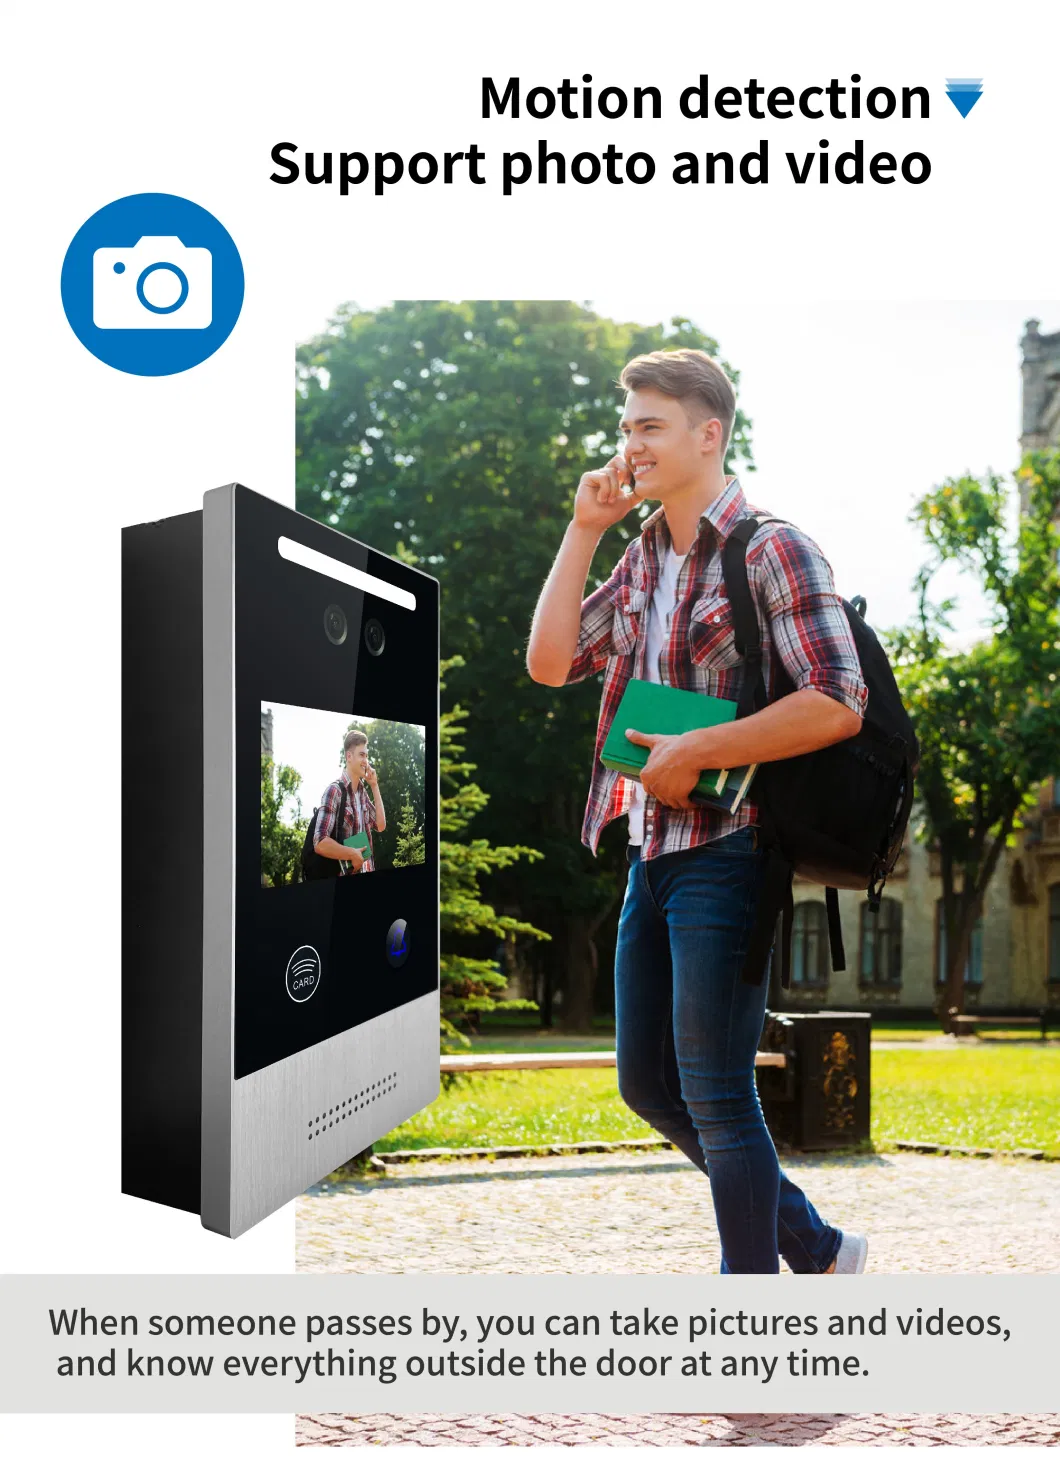 Video Door Phone Tuya Intercom Smart Doorbell Camera Door Video Intercom System